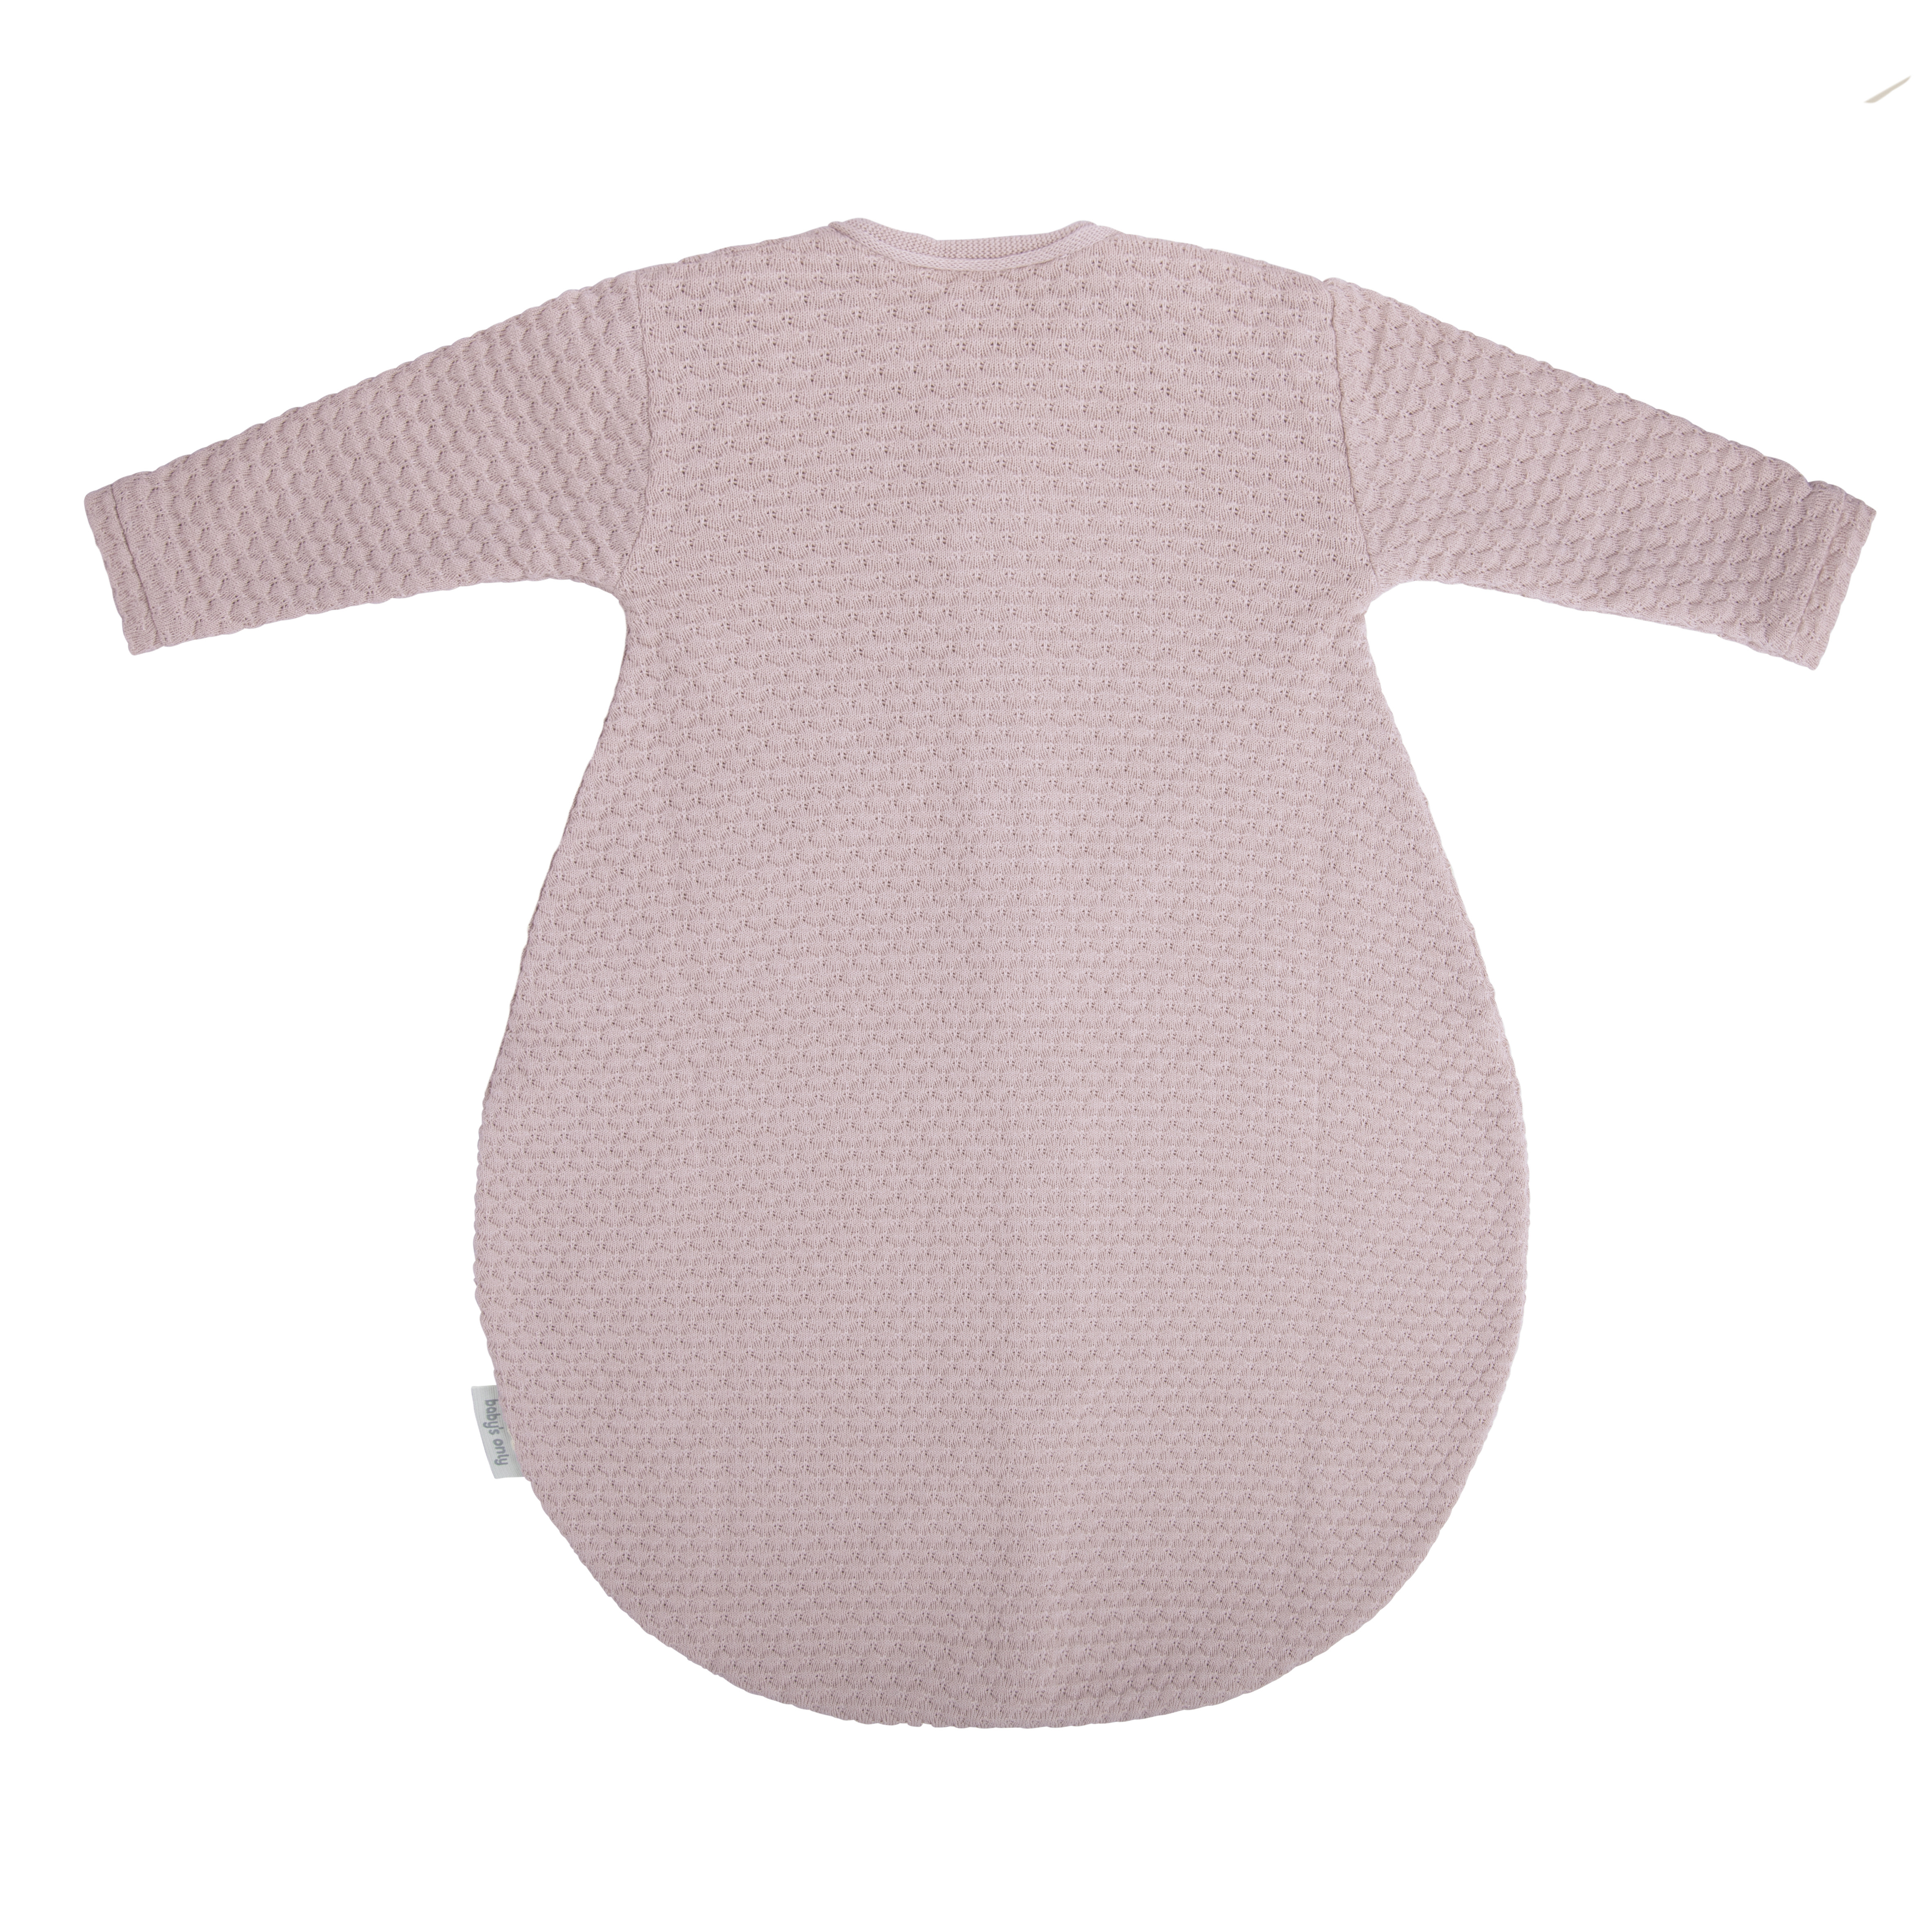 Sleeping bag long sleeves Sky old pink - 70 cm